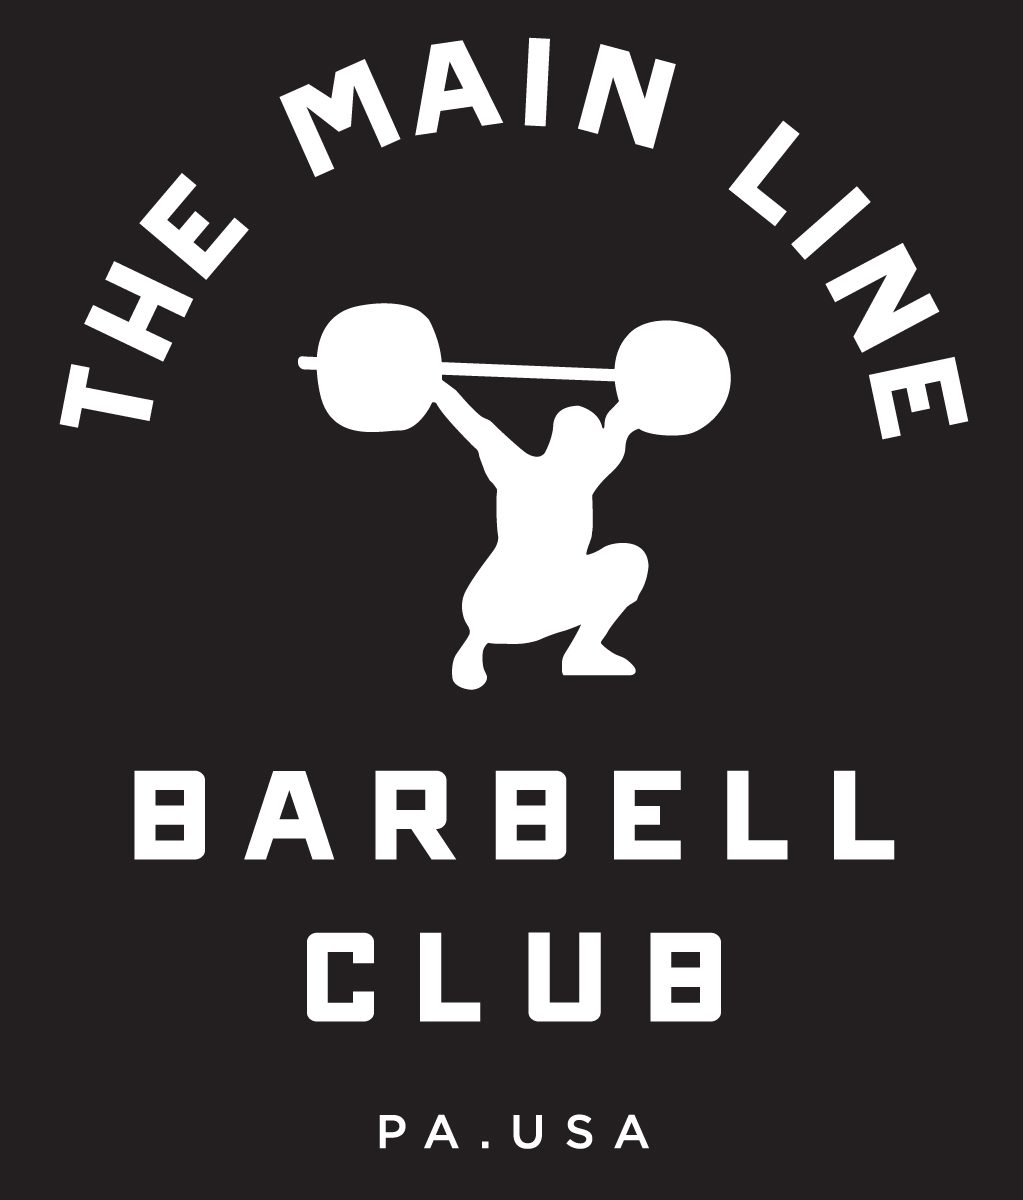 Week of 9.12.16 Barbell Club